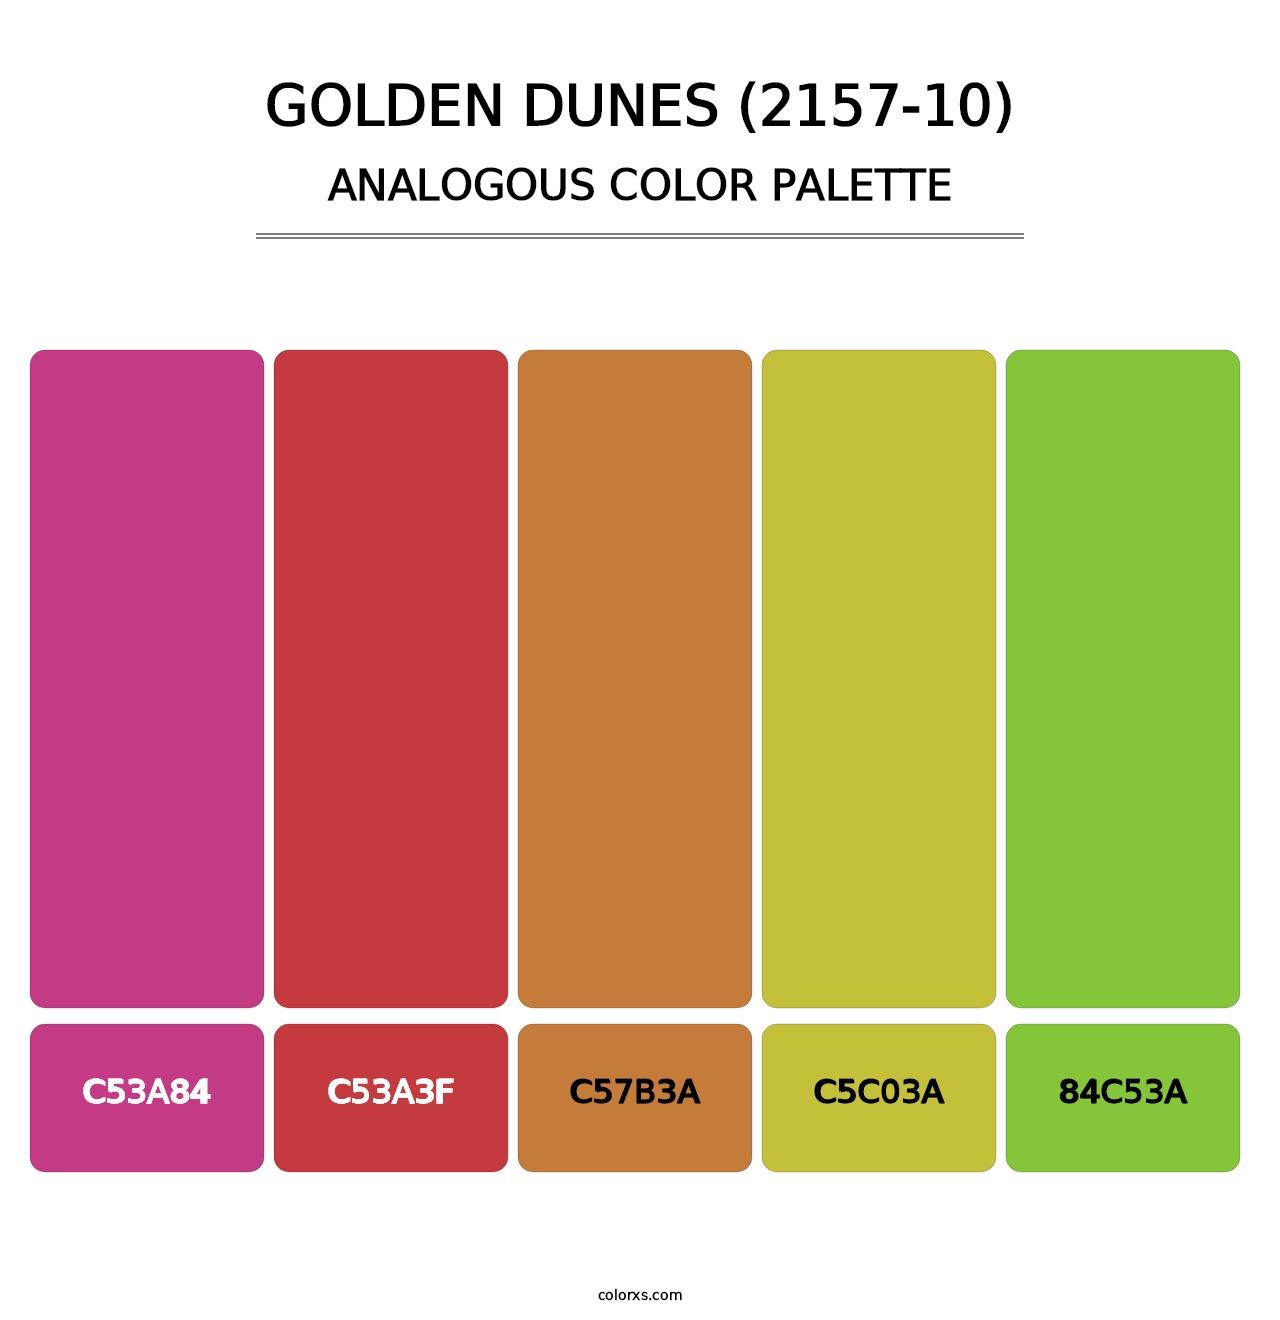 Golden Dunes (2157-10) - Analogous Color Palette